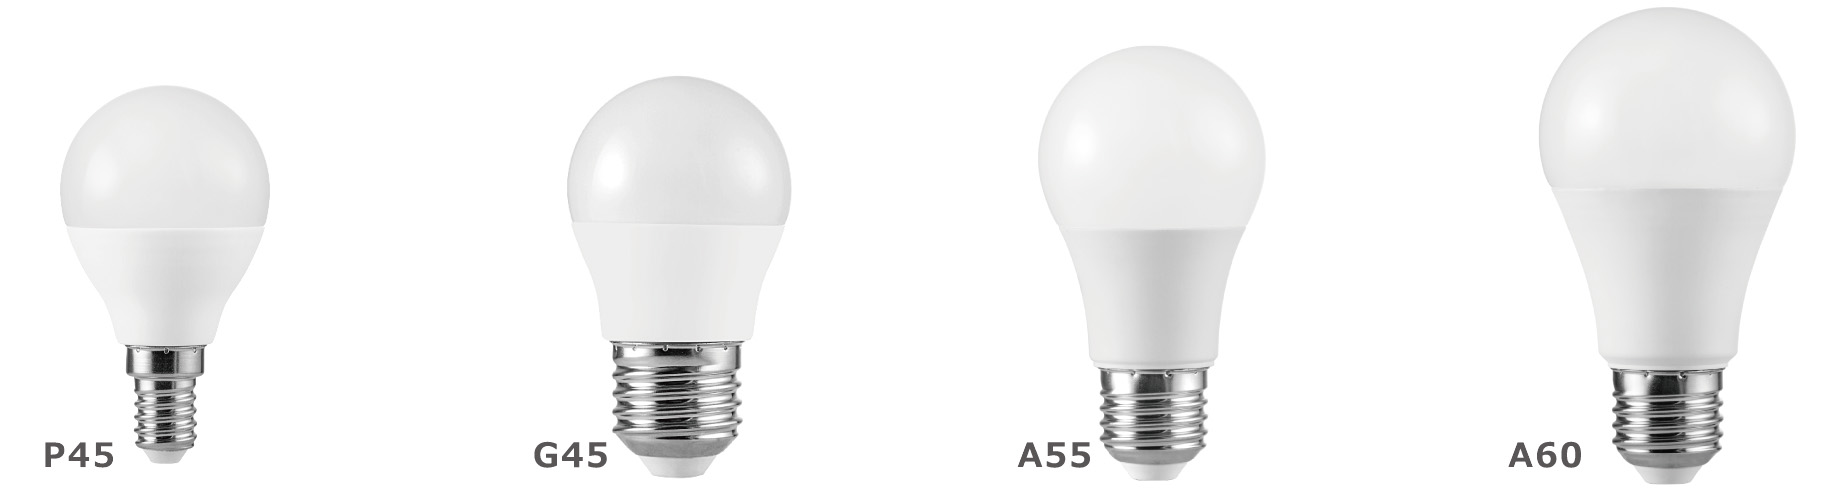 LED Bulb A60